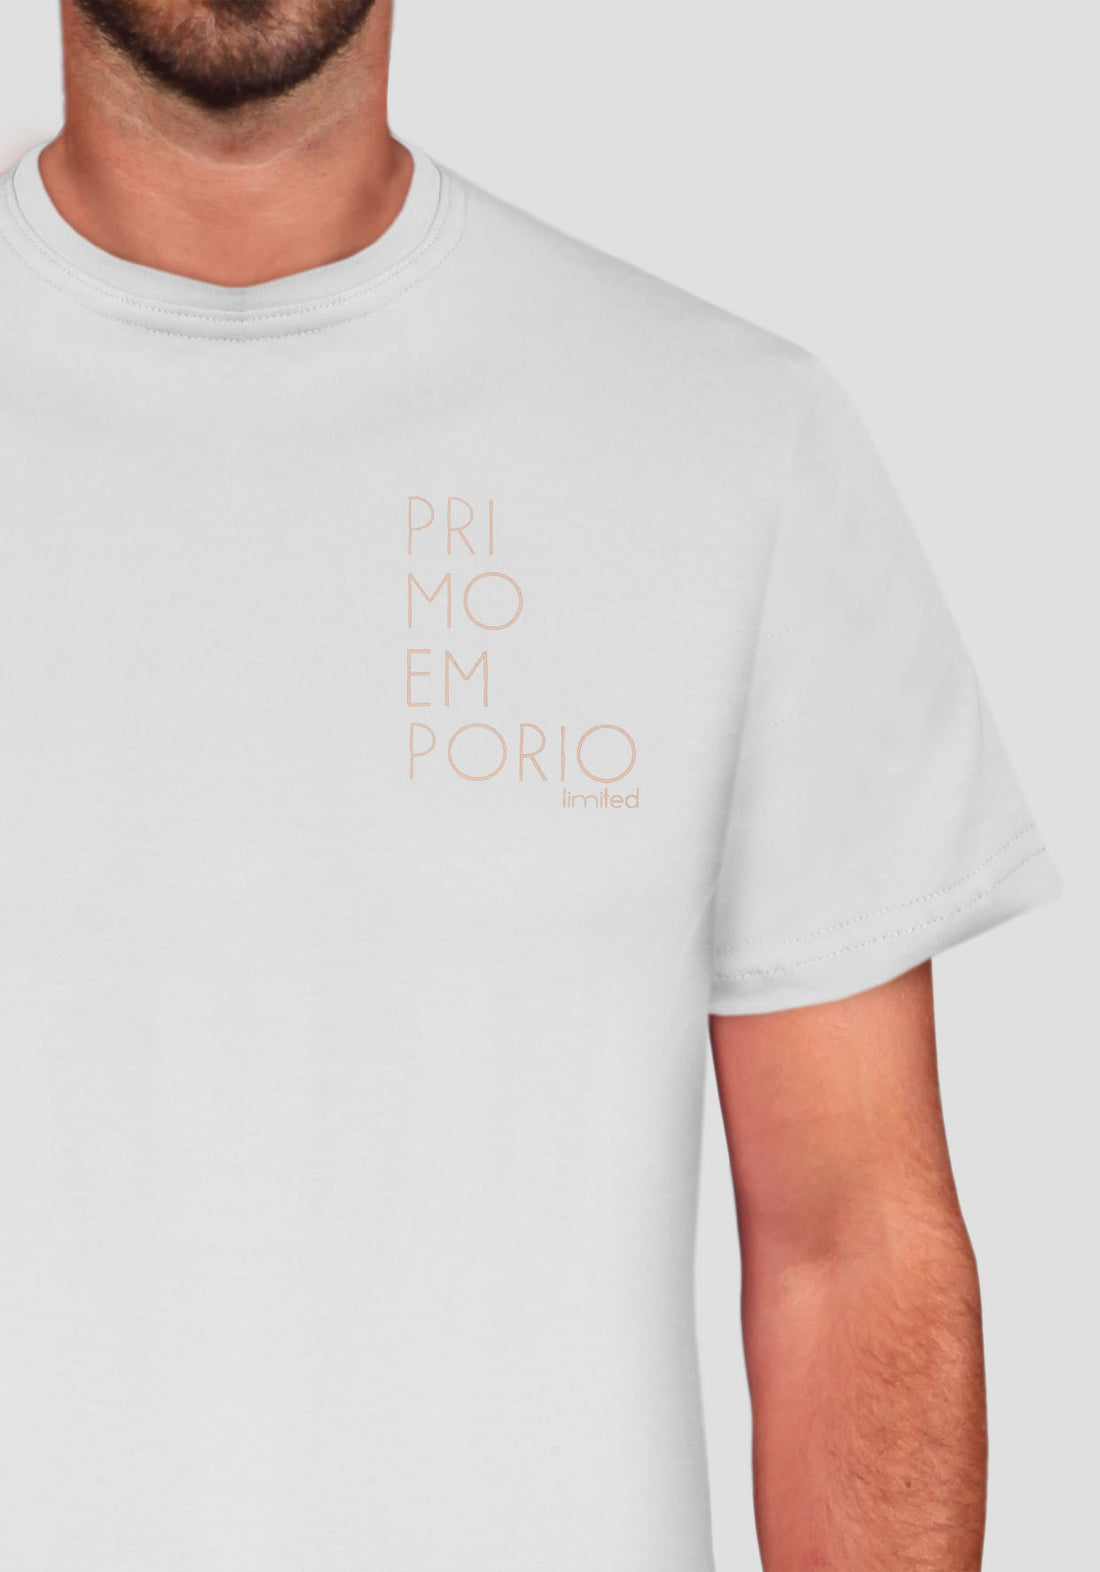 T-Shirt Elastica con Stampa Petto Primo Emporio - Bianco